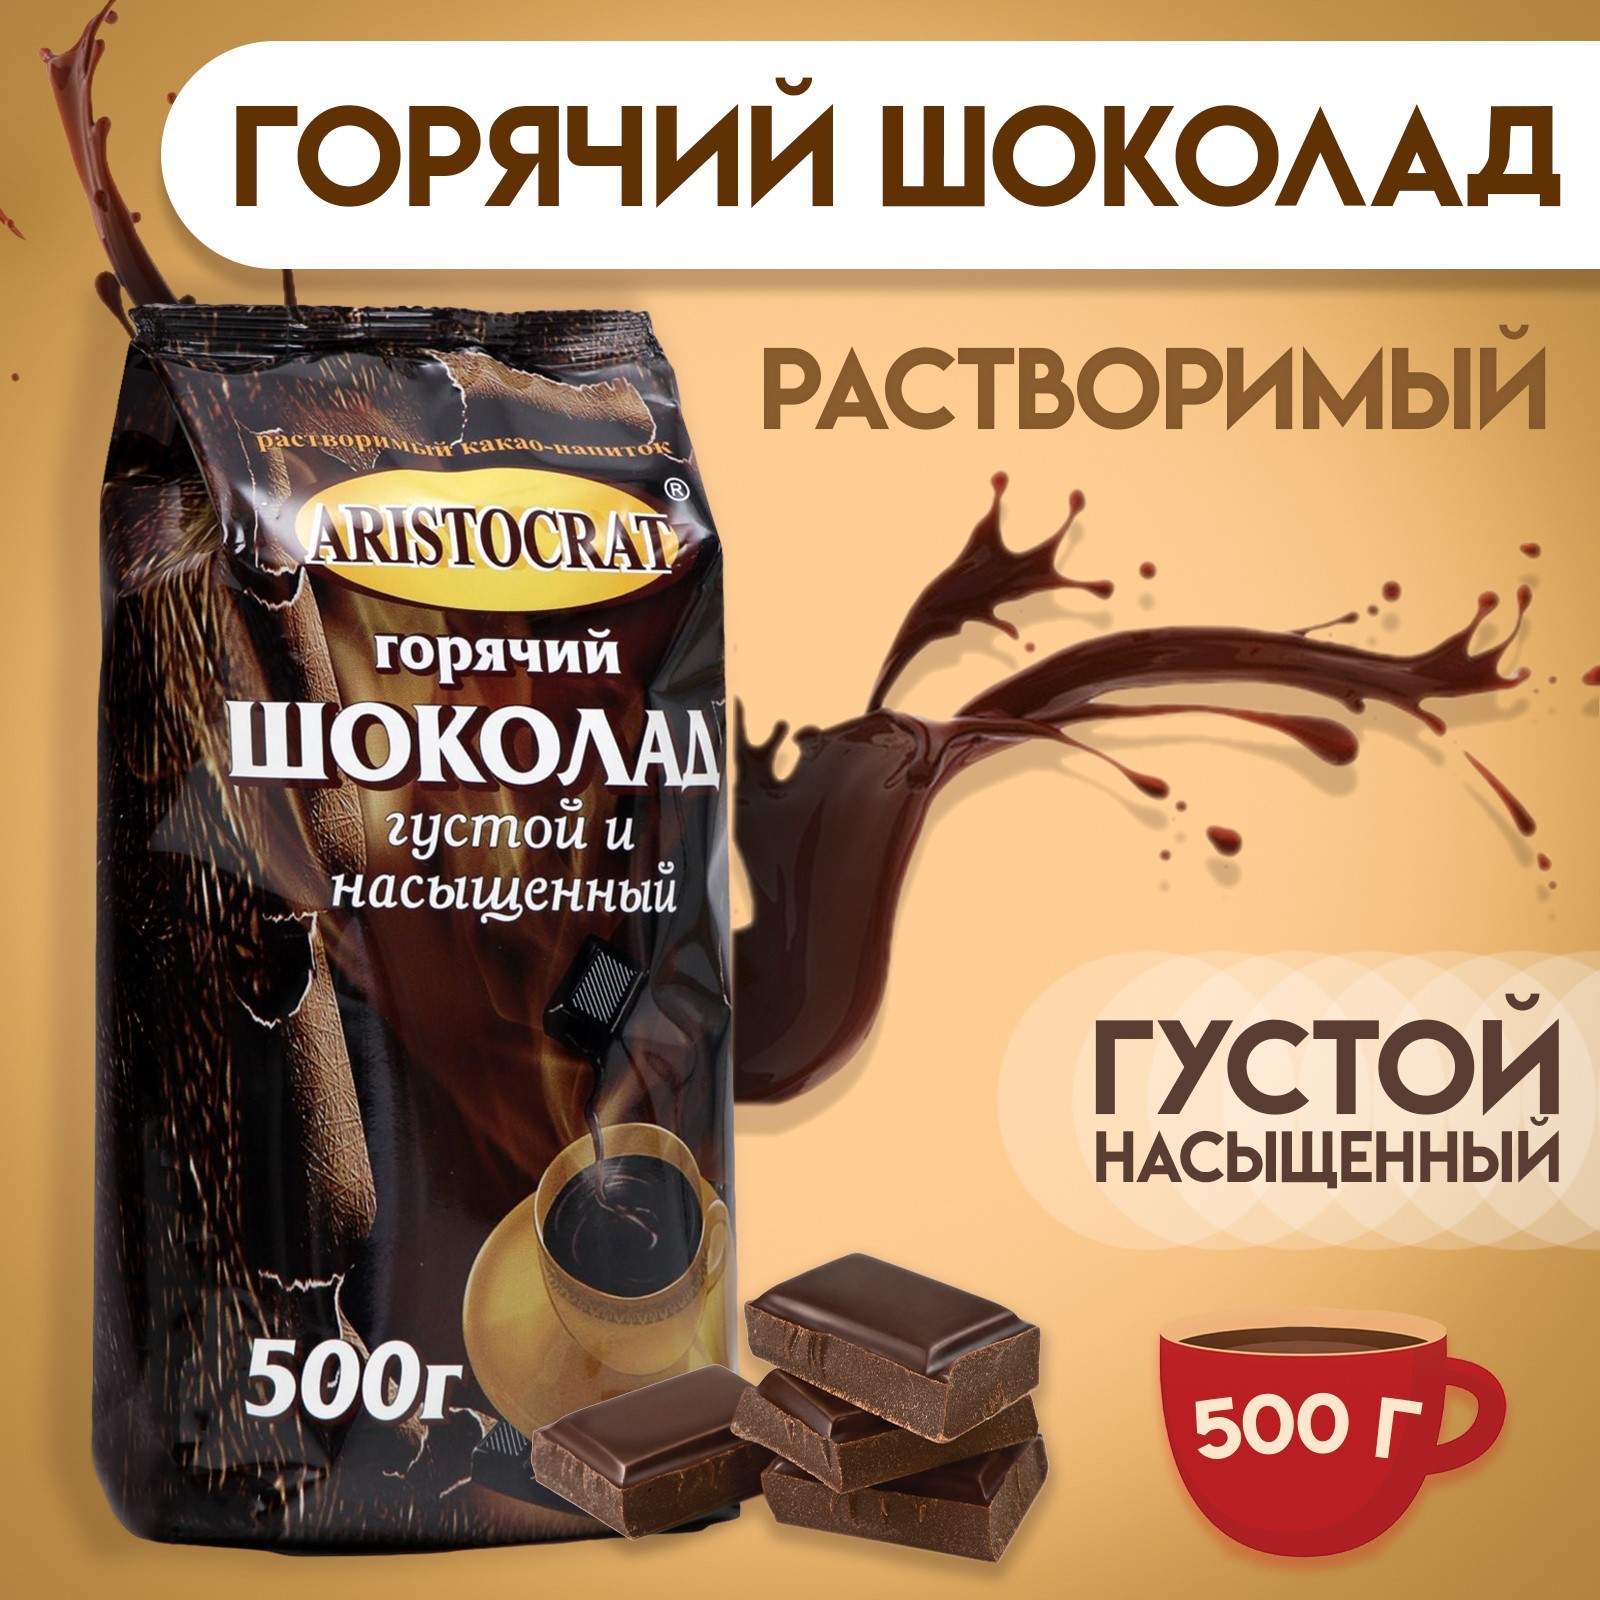 Горячий шоколад Aristocrat густой и насыщенный 500 г